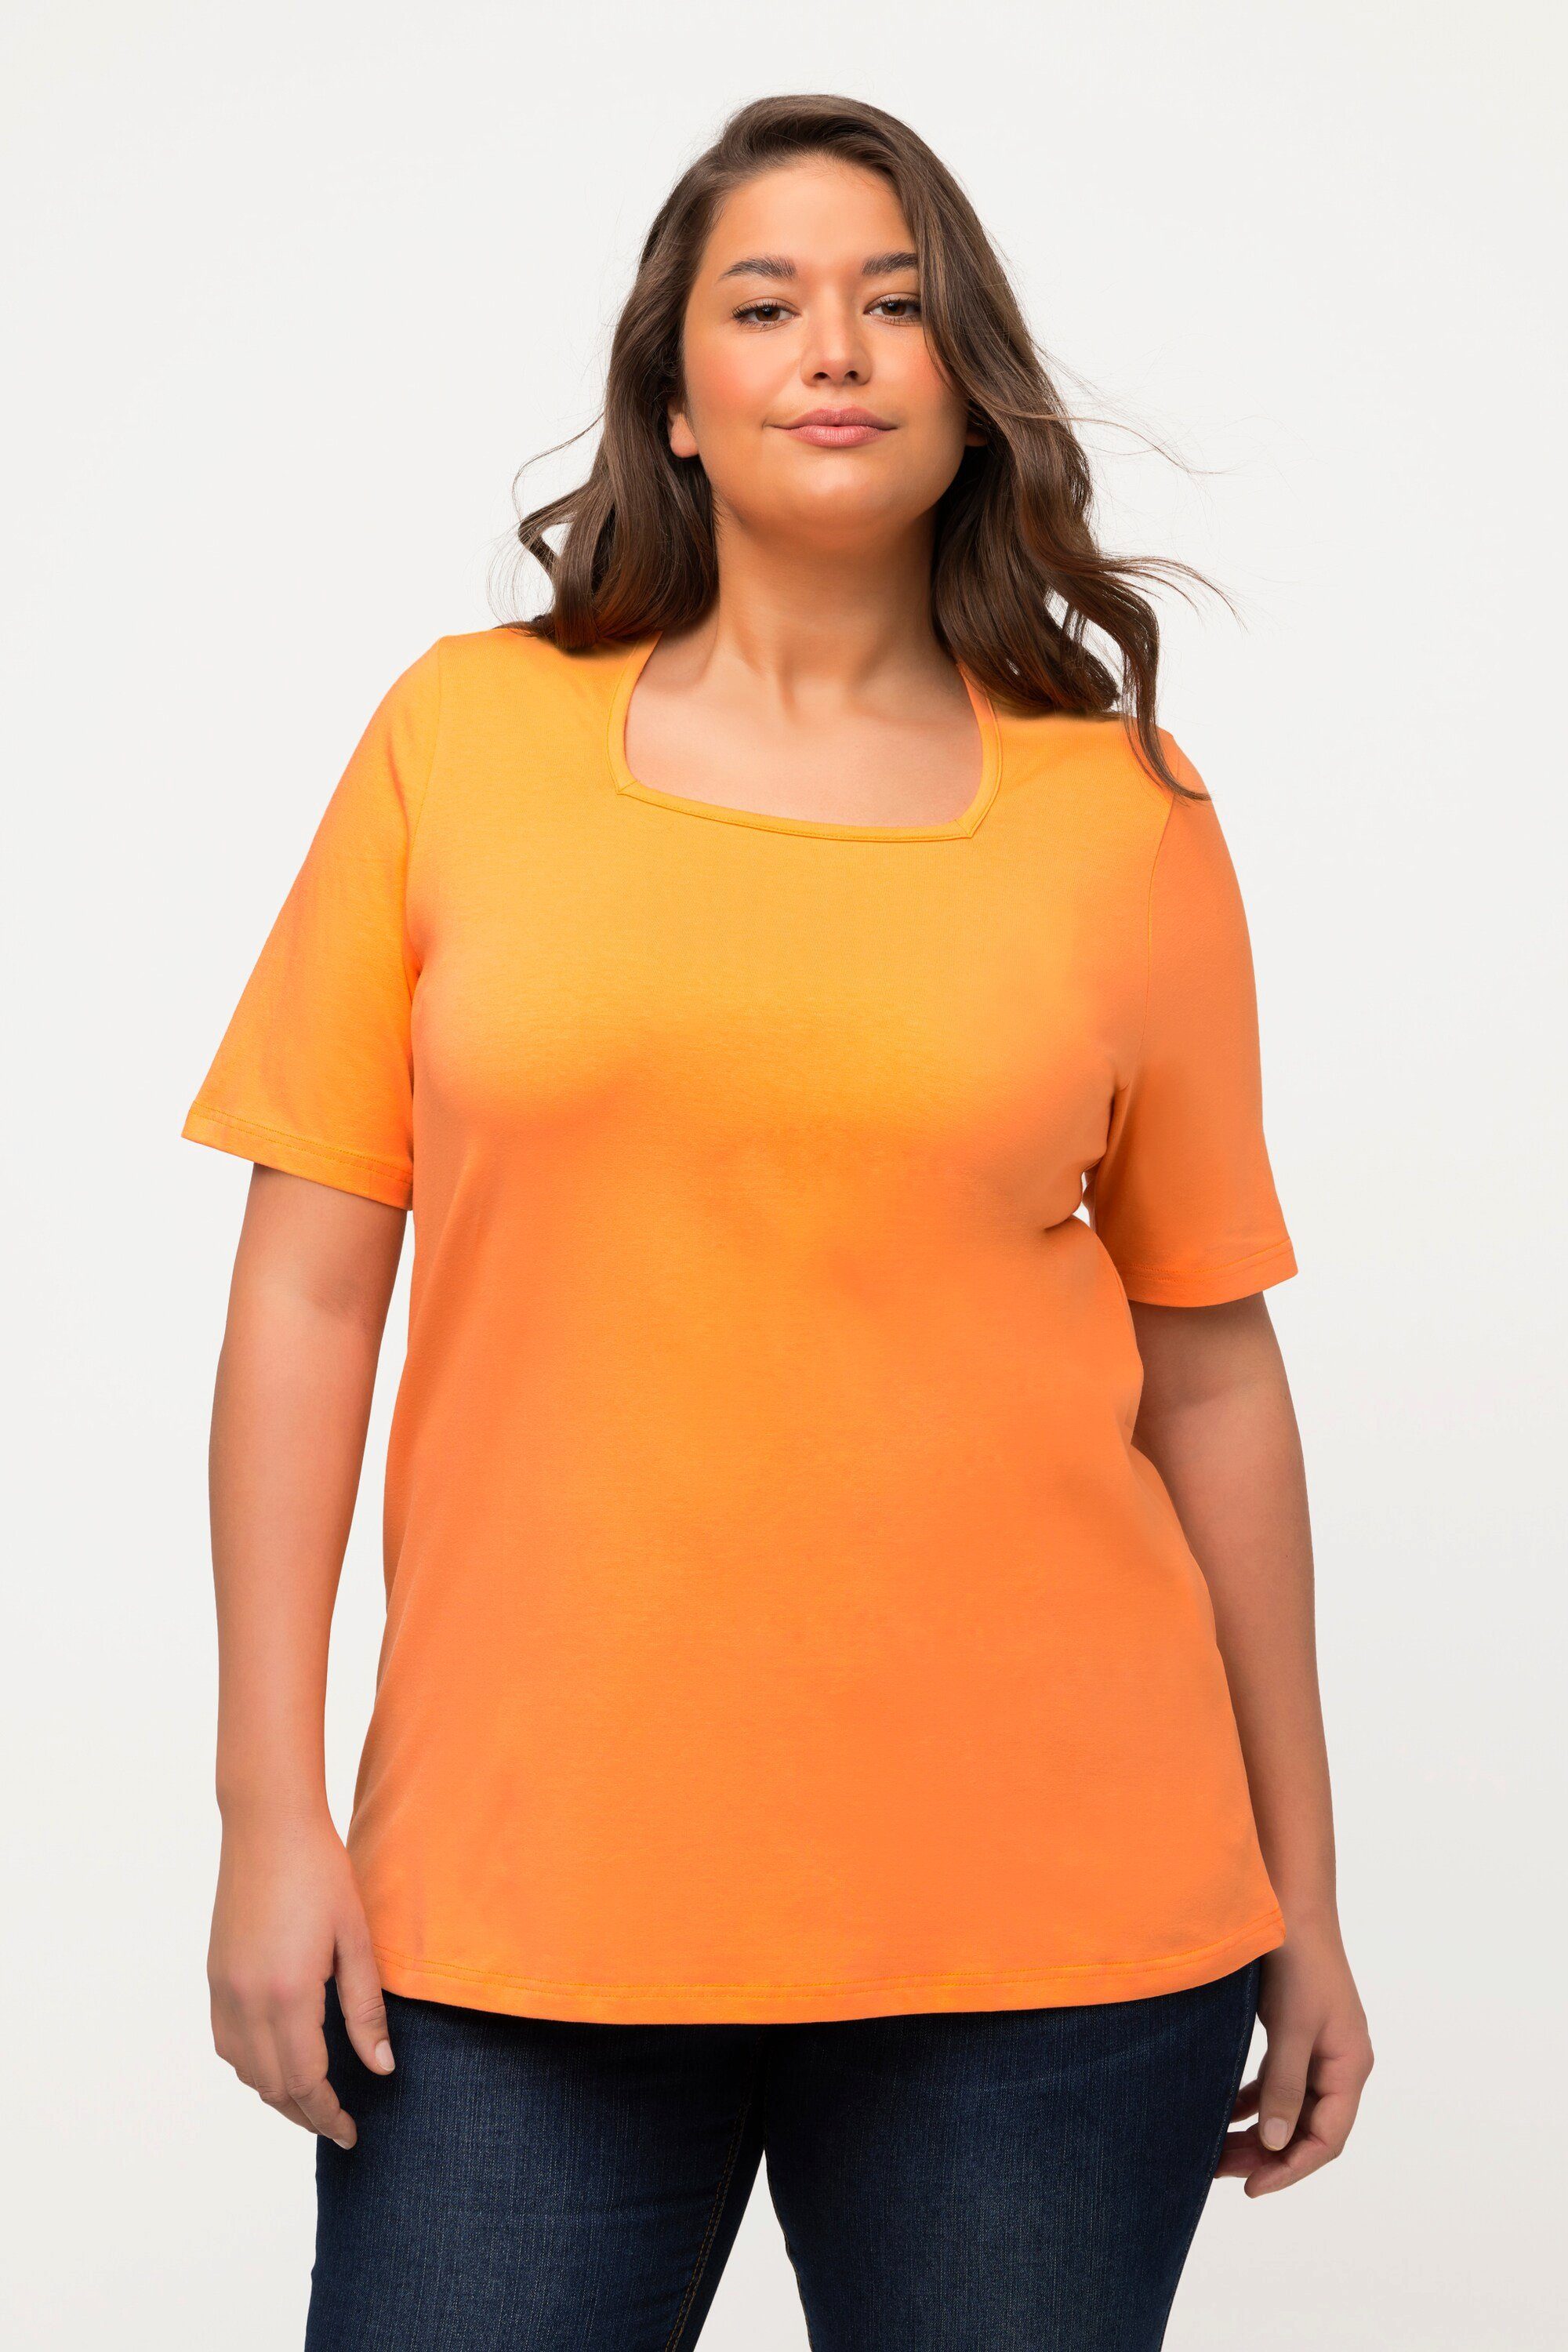 Halbarm Carree-Ausschnitt T-Shirt Rundhalsshirt Ulla orange cantaloupe Popken A-Linie